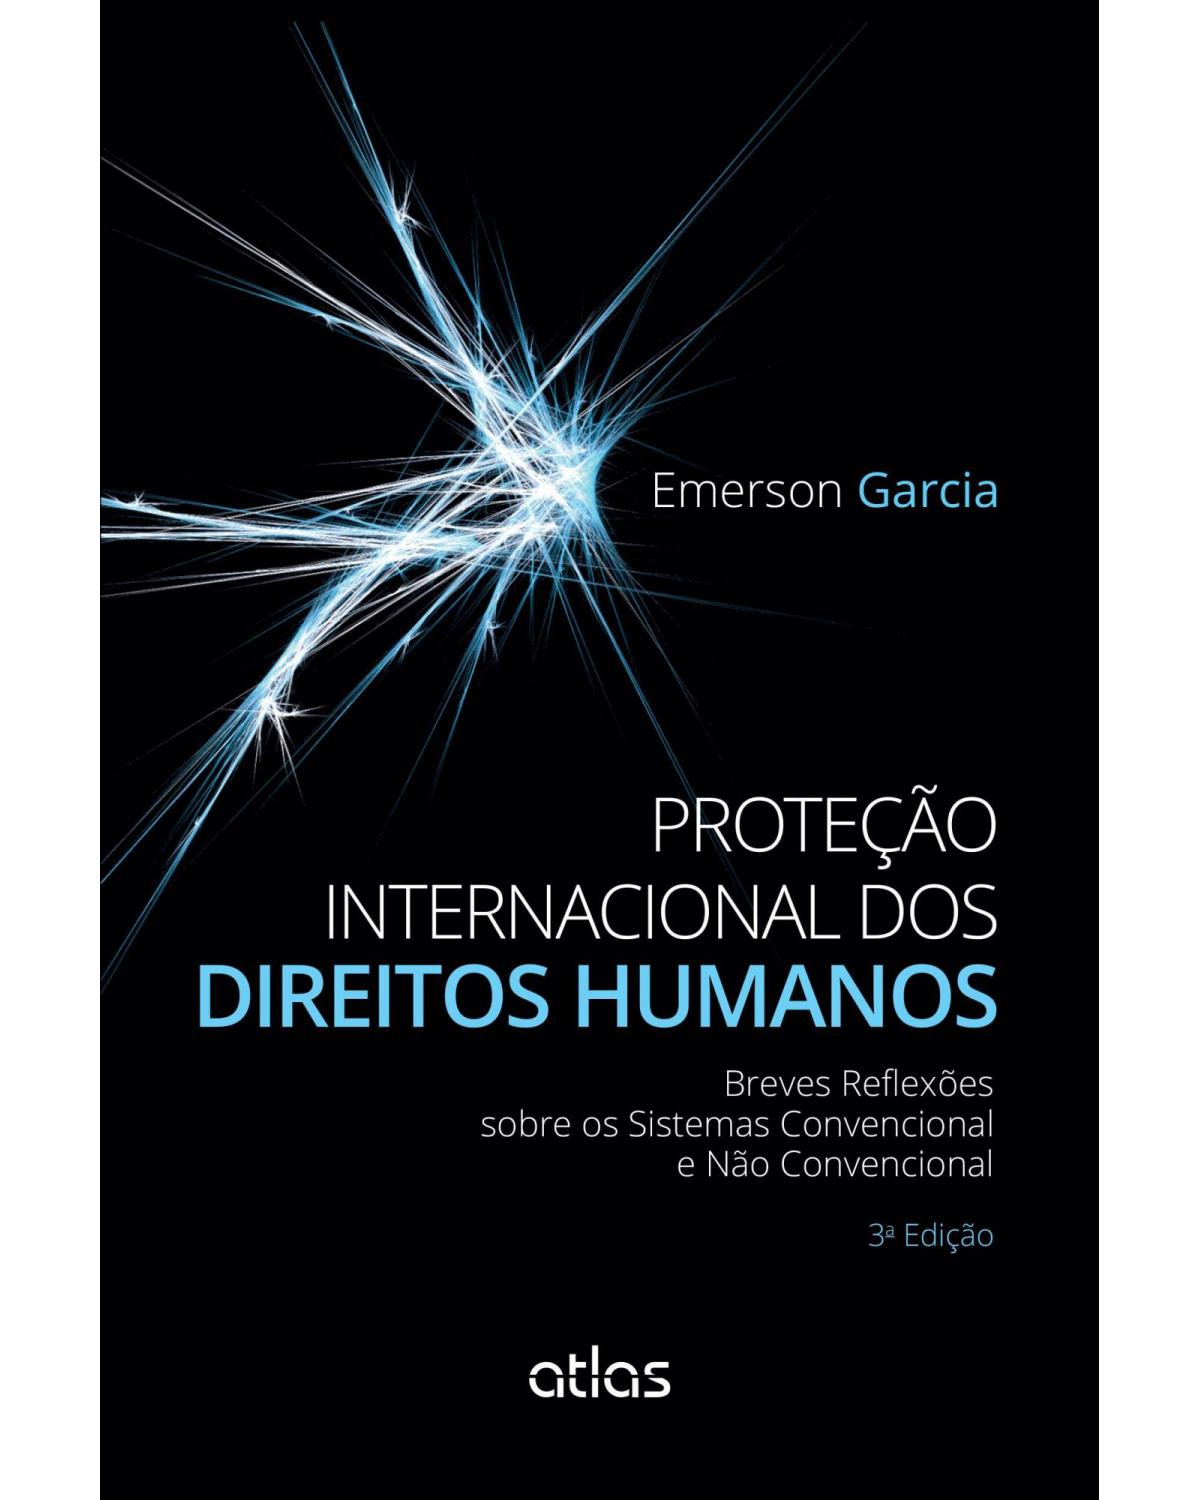 Proteção internacional dos direitos humanos - Breves reflexões sobre os sistemas convencional e não convencional - 3ª Edição | 2015